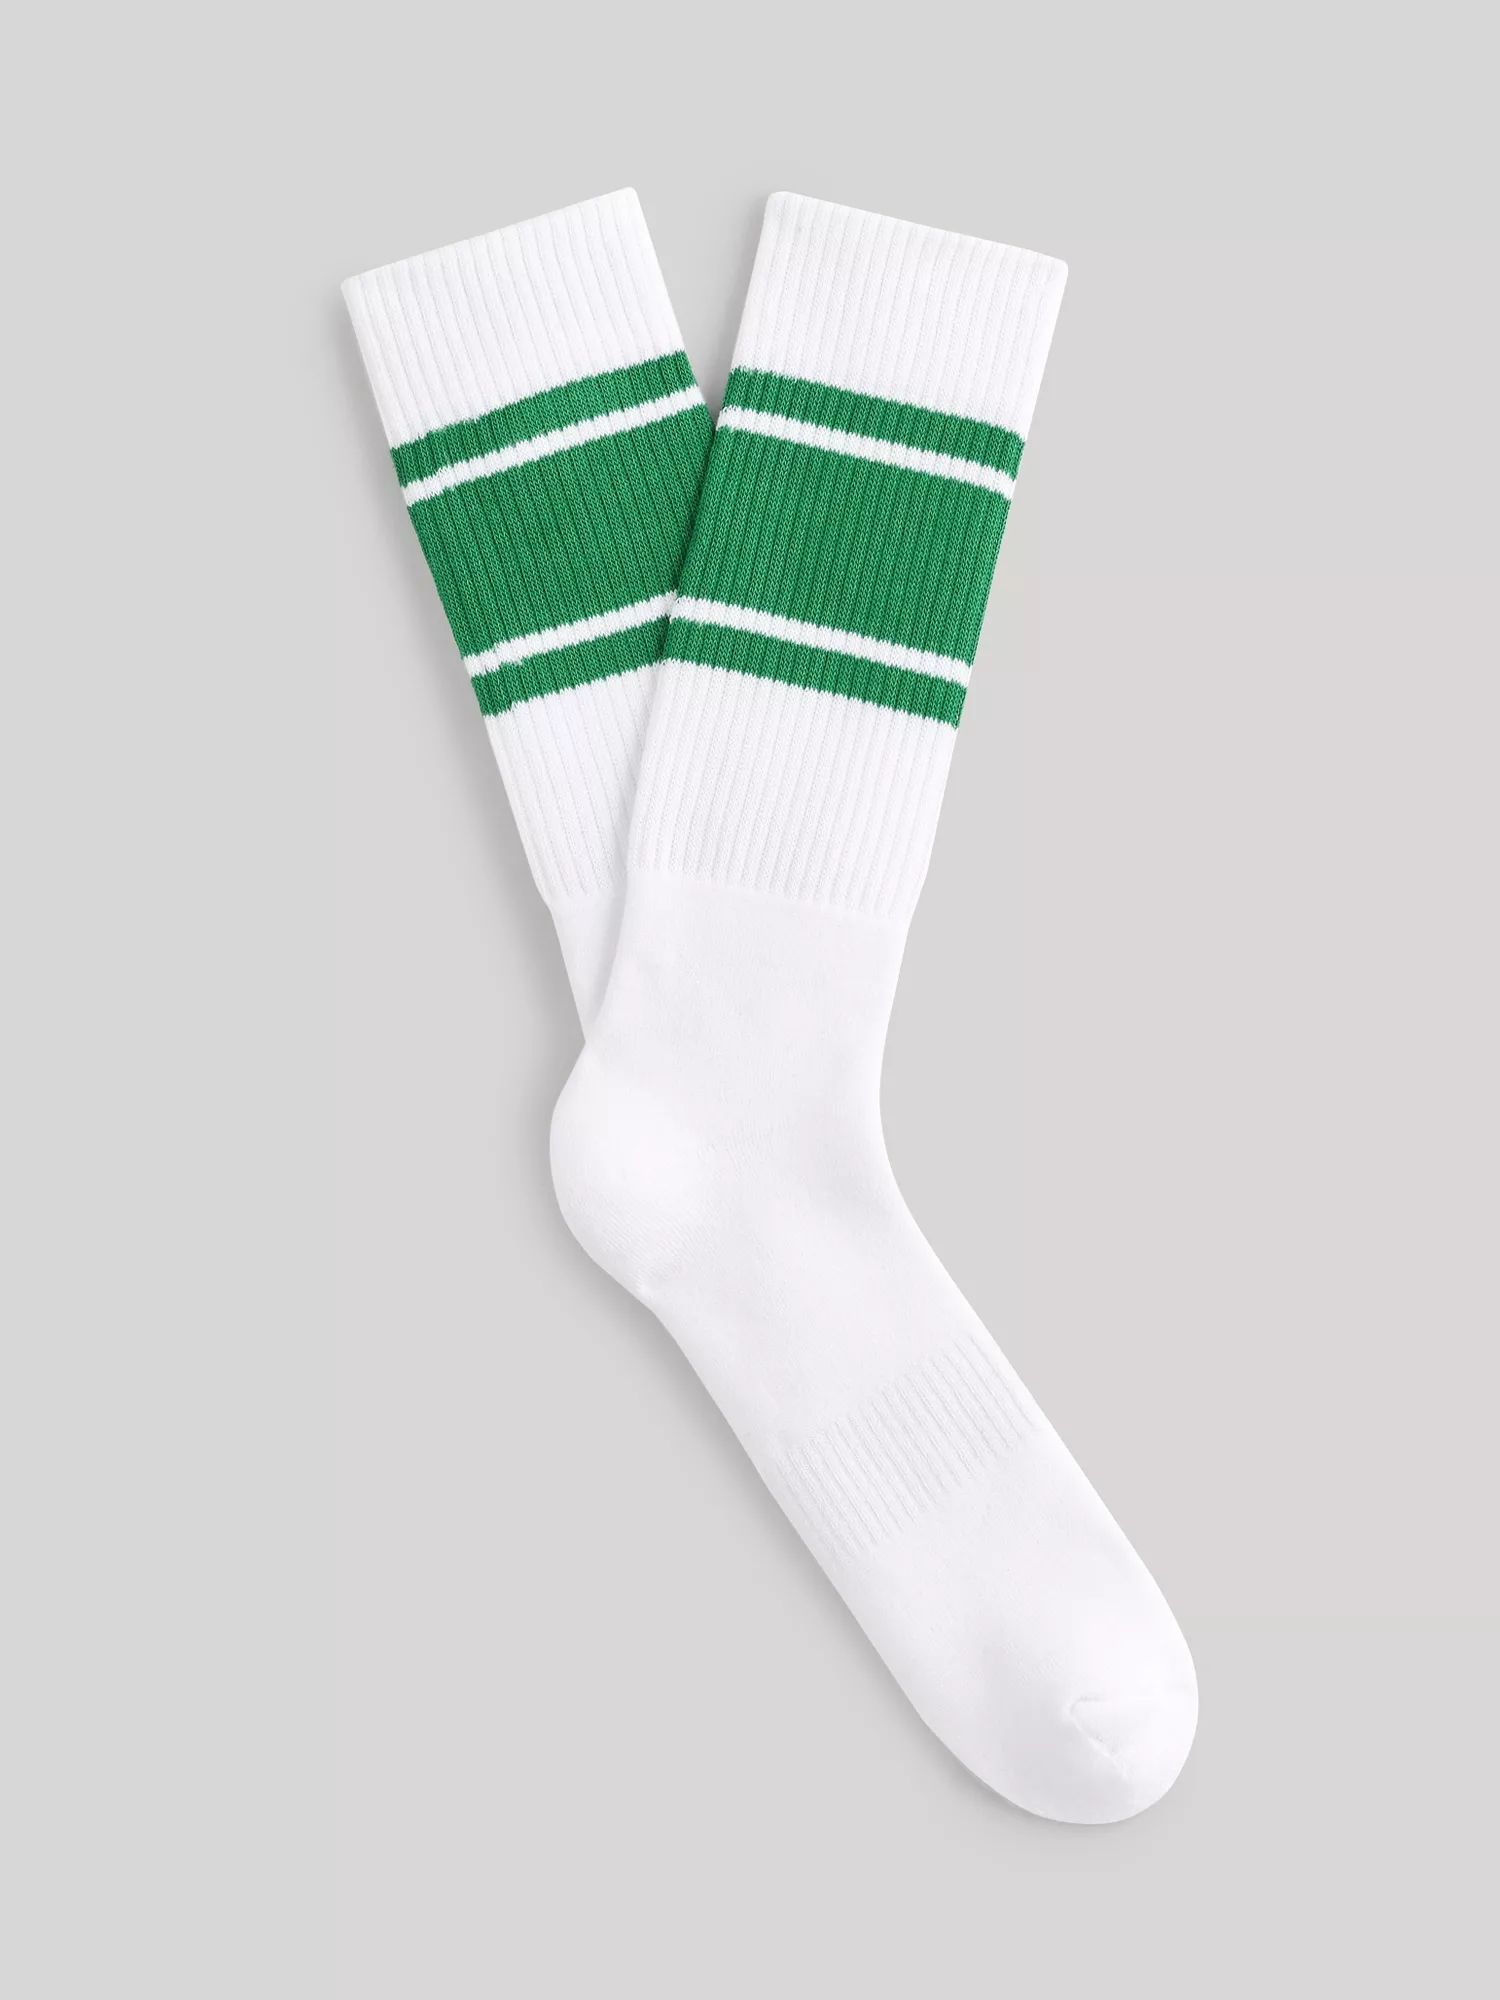 Sportovní ponožky Vitreux s proužkem (1)